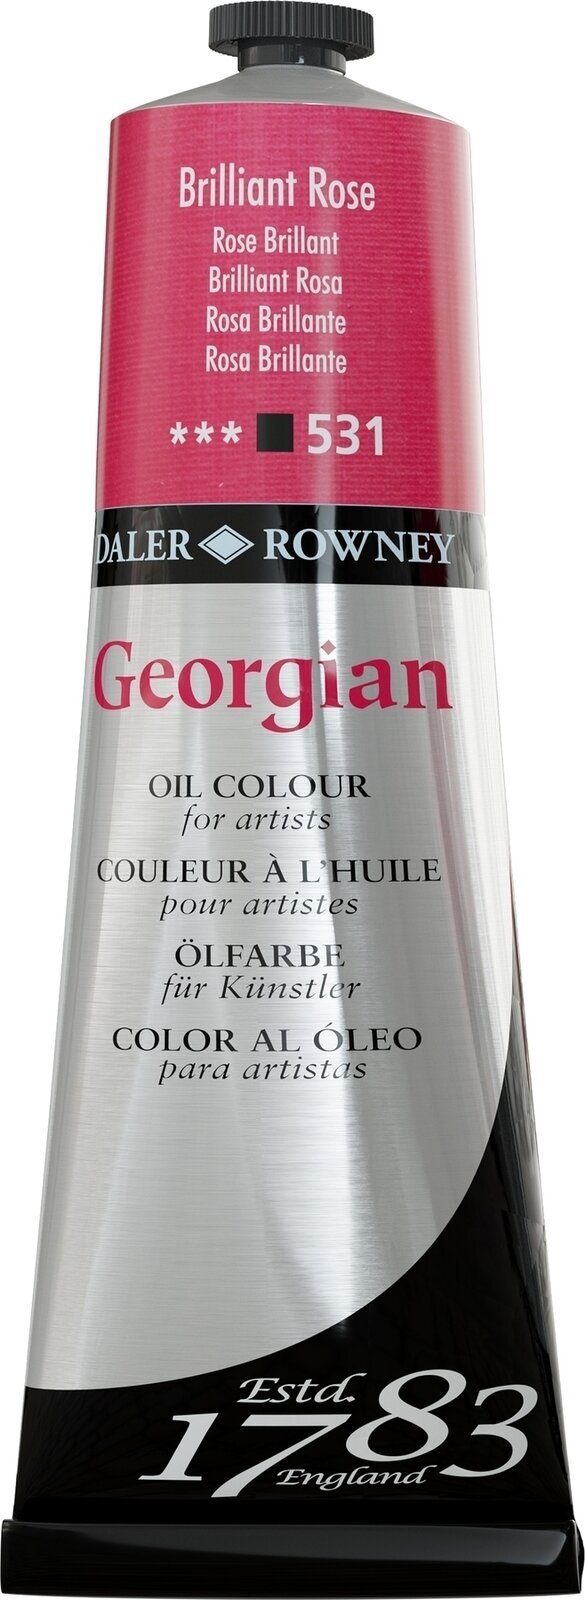 Oil colour Daler Rowney Georgian Oil Paint Brilliant Rose 225 ml 1 pc